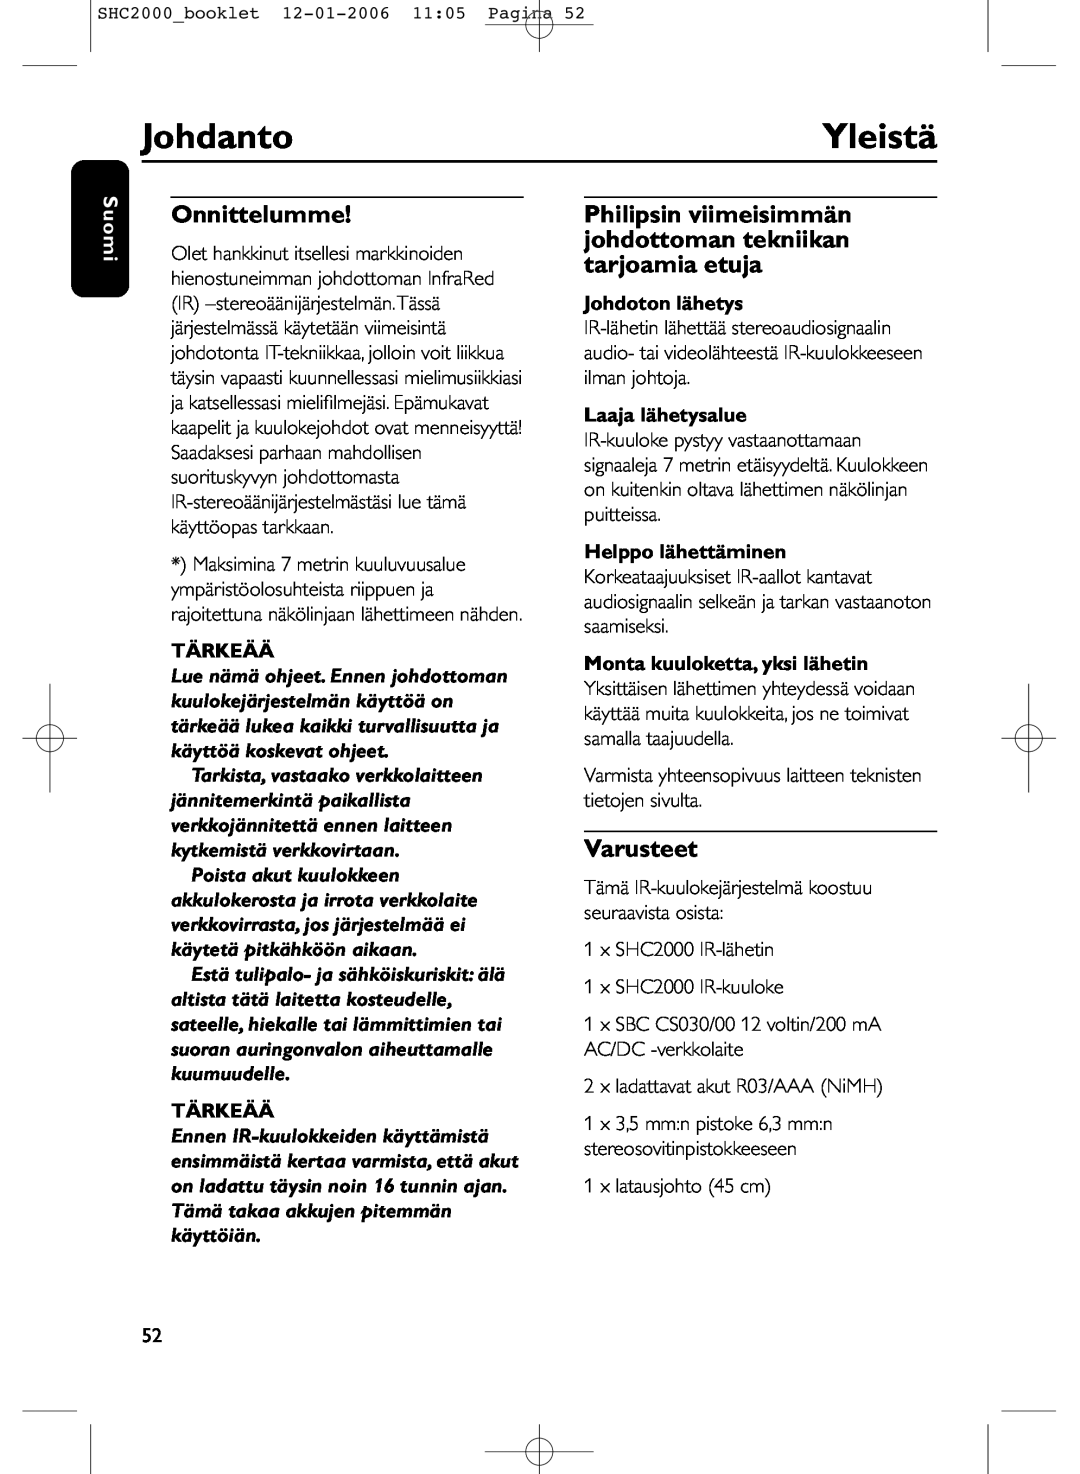 Philips SHC2000 manual Johdanto, Yleistä, Onnittelumme, Varusteet, Suomi, Tärkeää, Johdoton lähetys, Laaja lähetysalue 